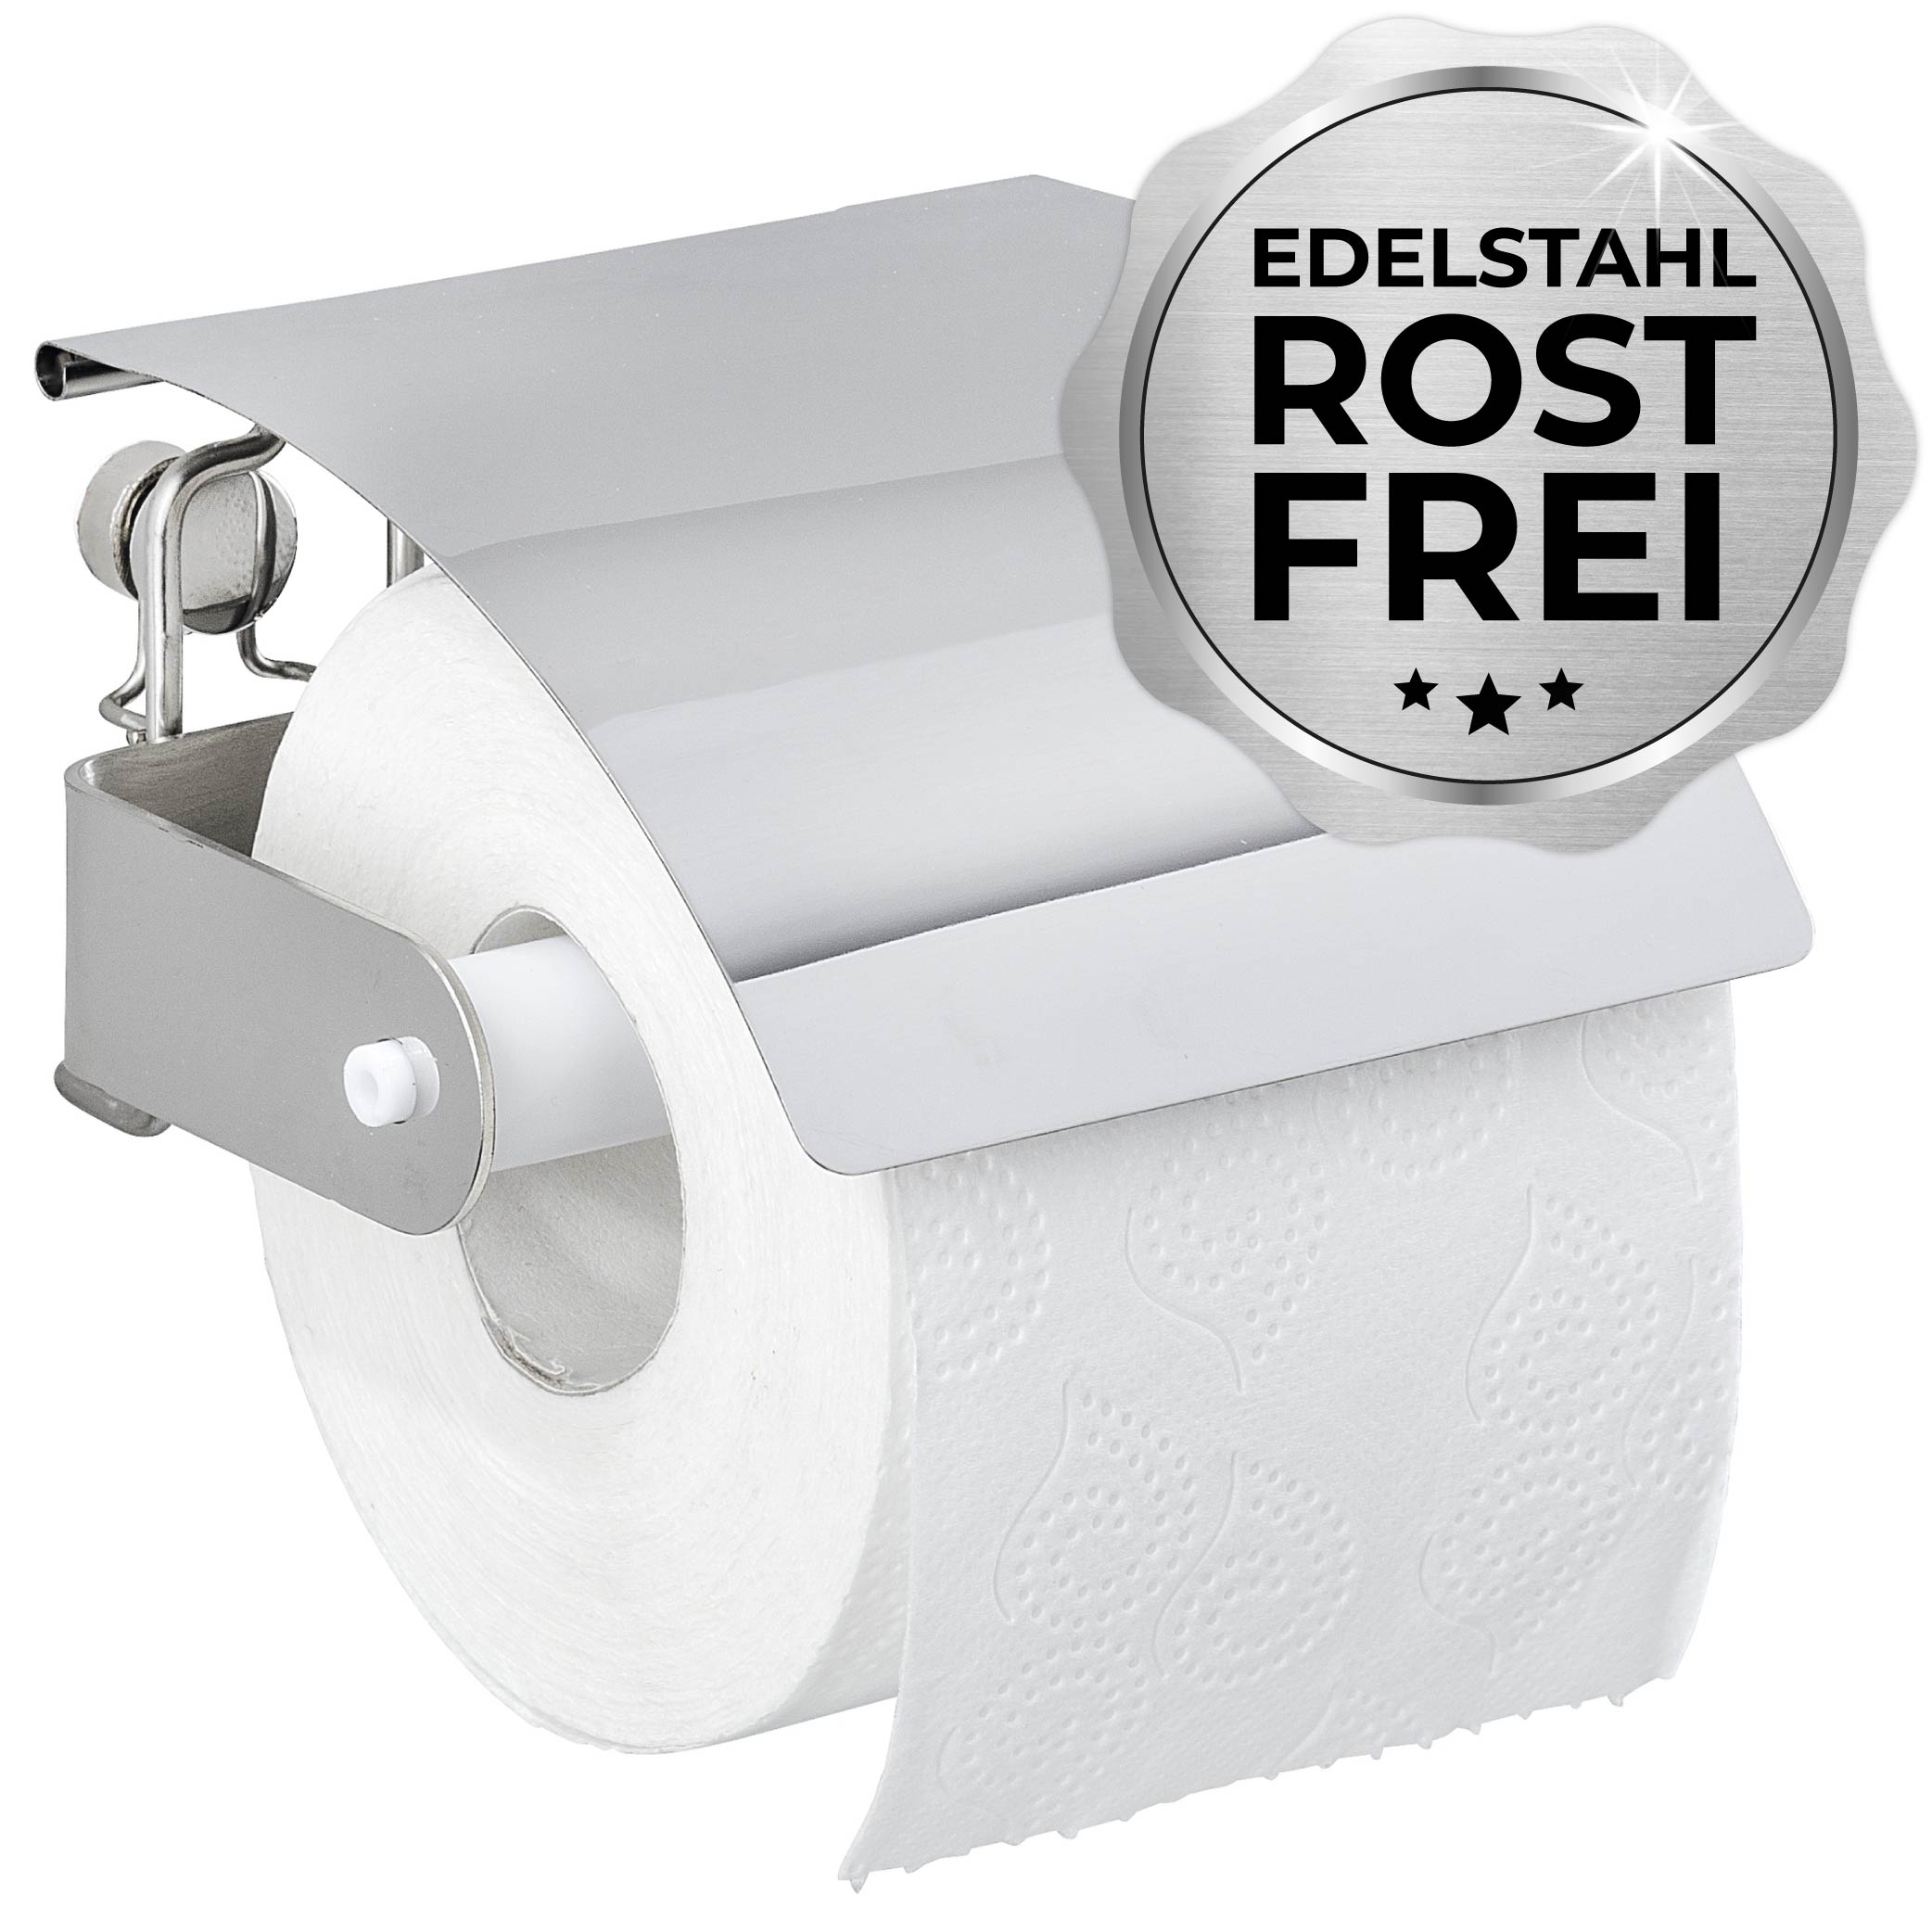 Moderner Toilettenpapierhalter - Deal Die jedes | Rocket Bad! für Ergänzung